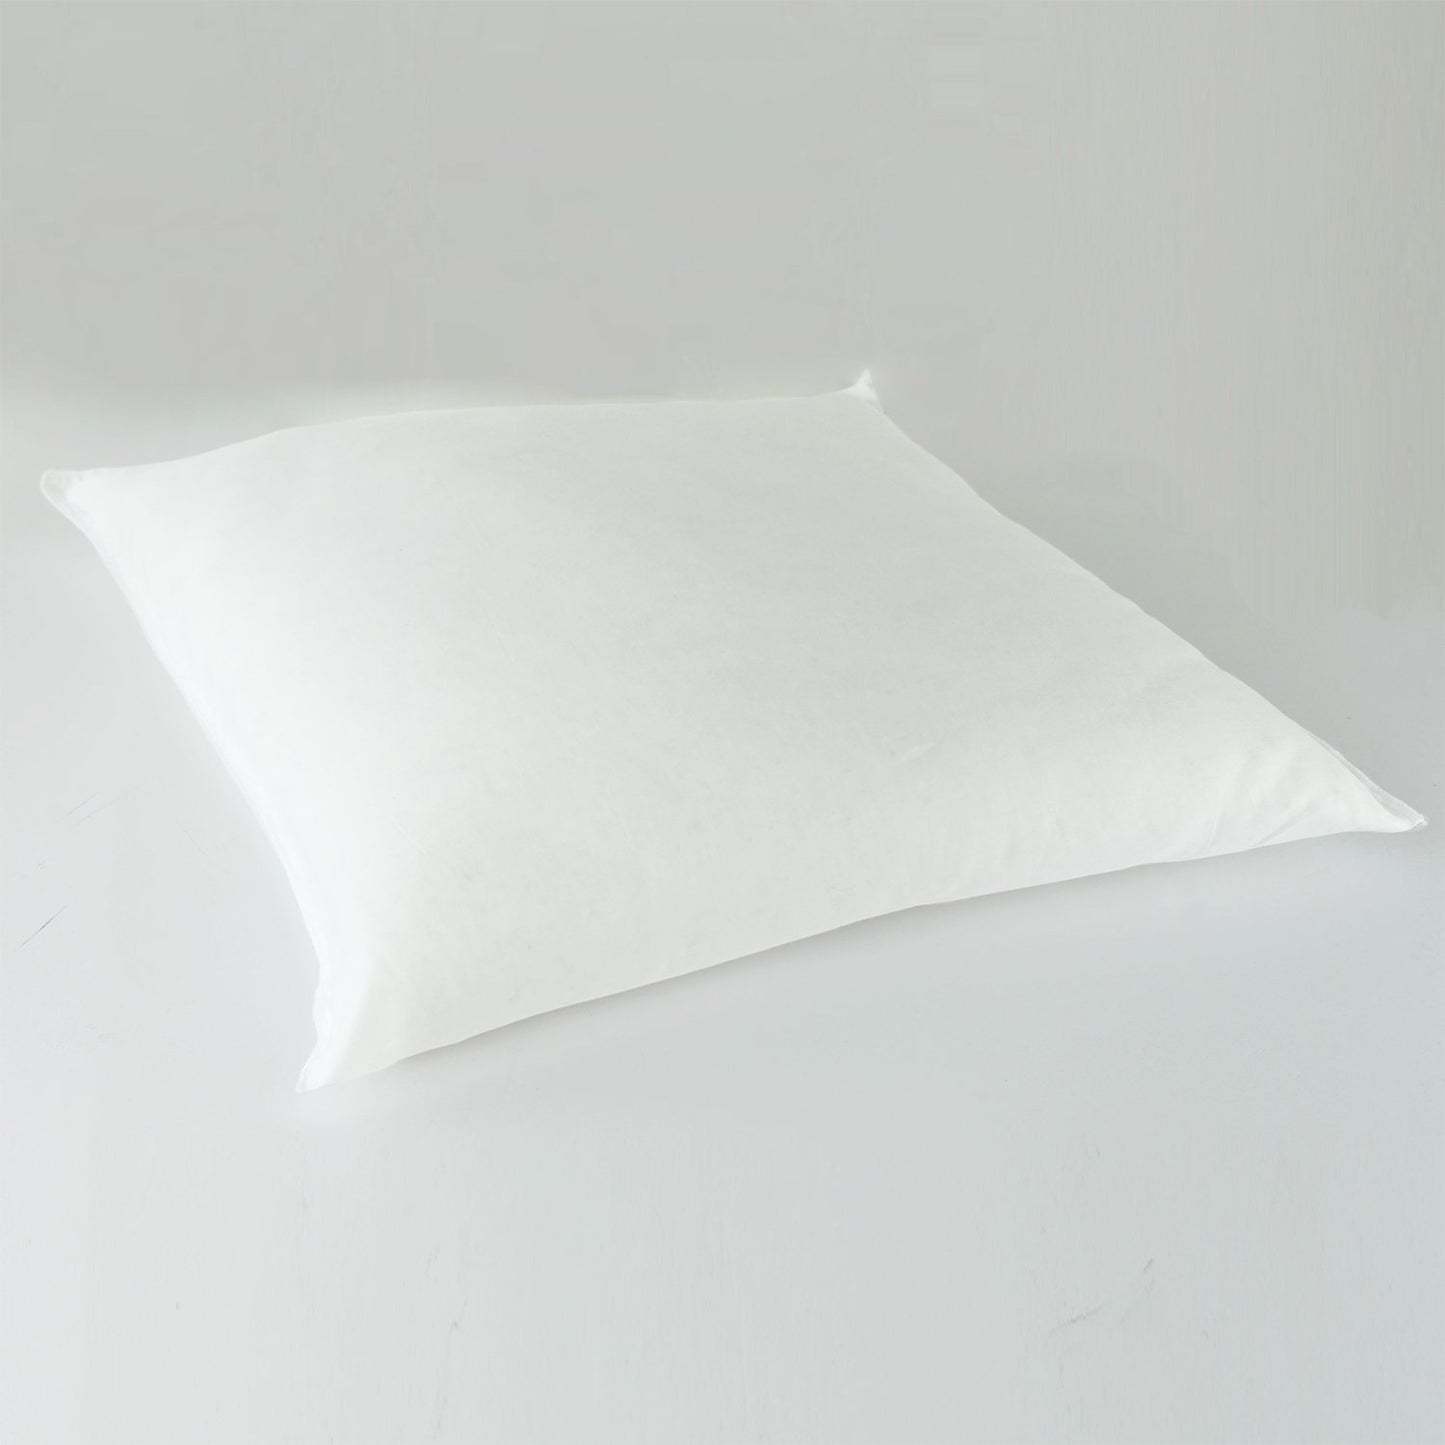 J-Life Seikai Ha Navy #2 Zabuton Floor Pillow_Pillows & Shams_Zabuton Floor Pillows_100% Cotton_Reversible